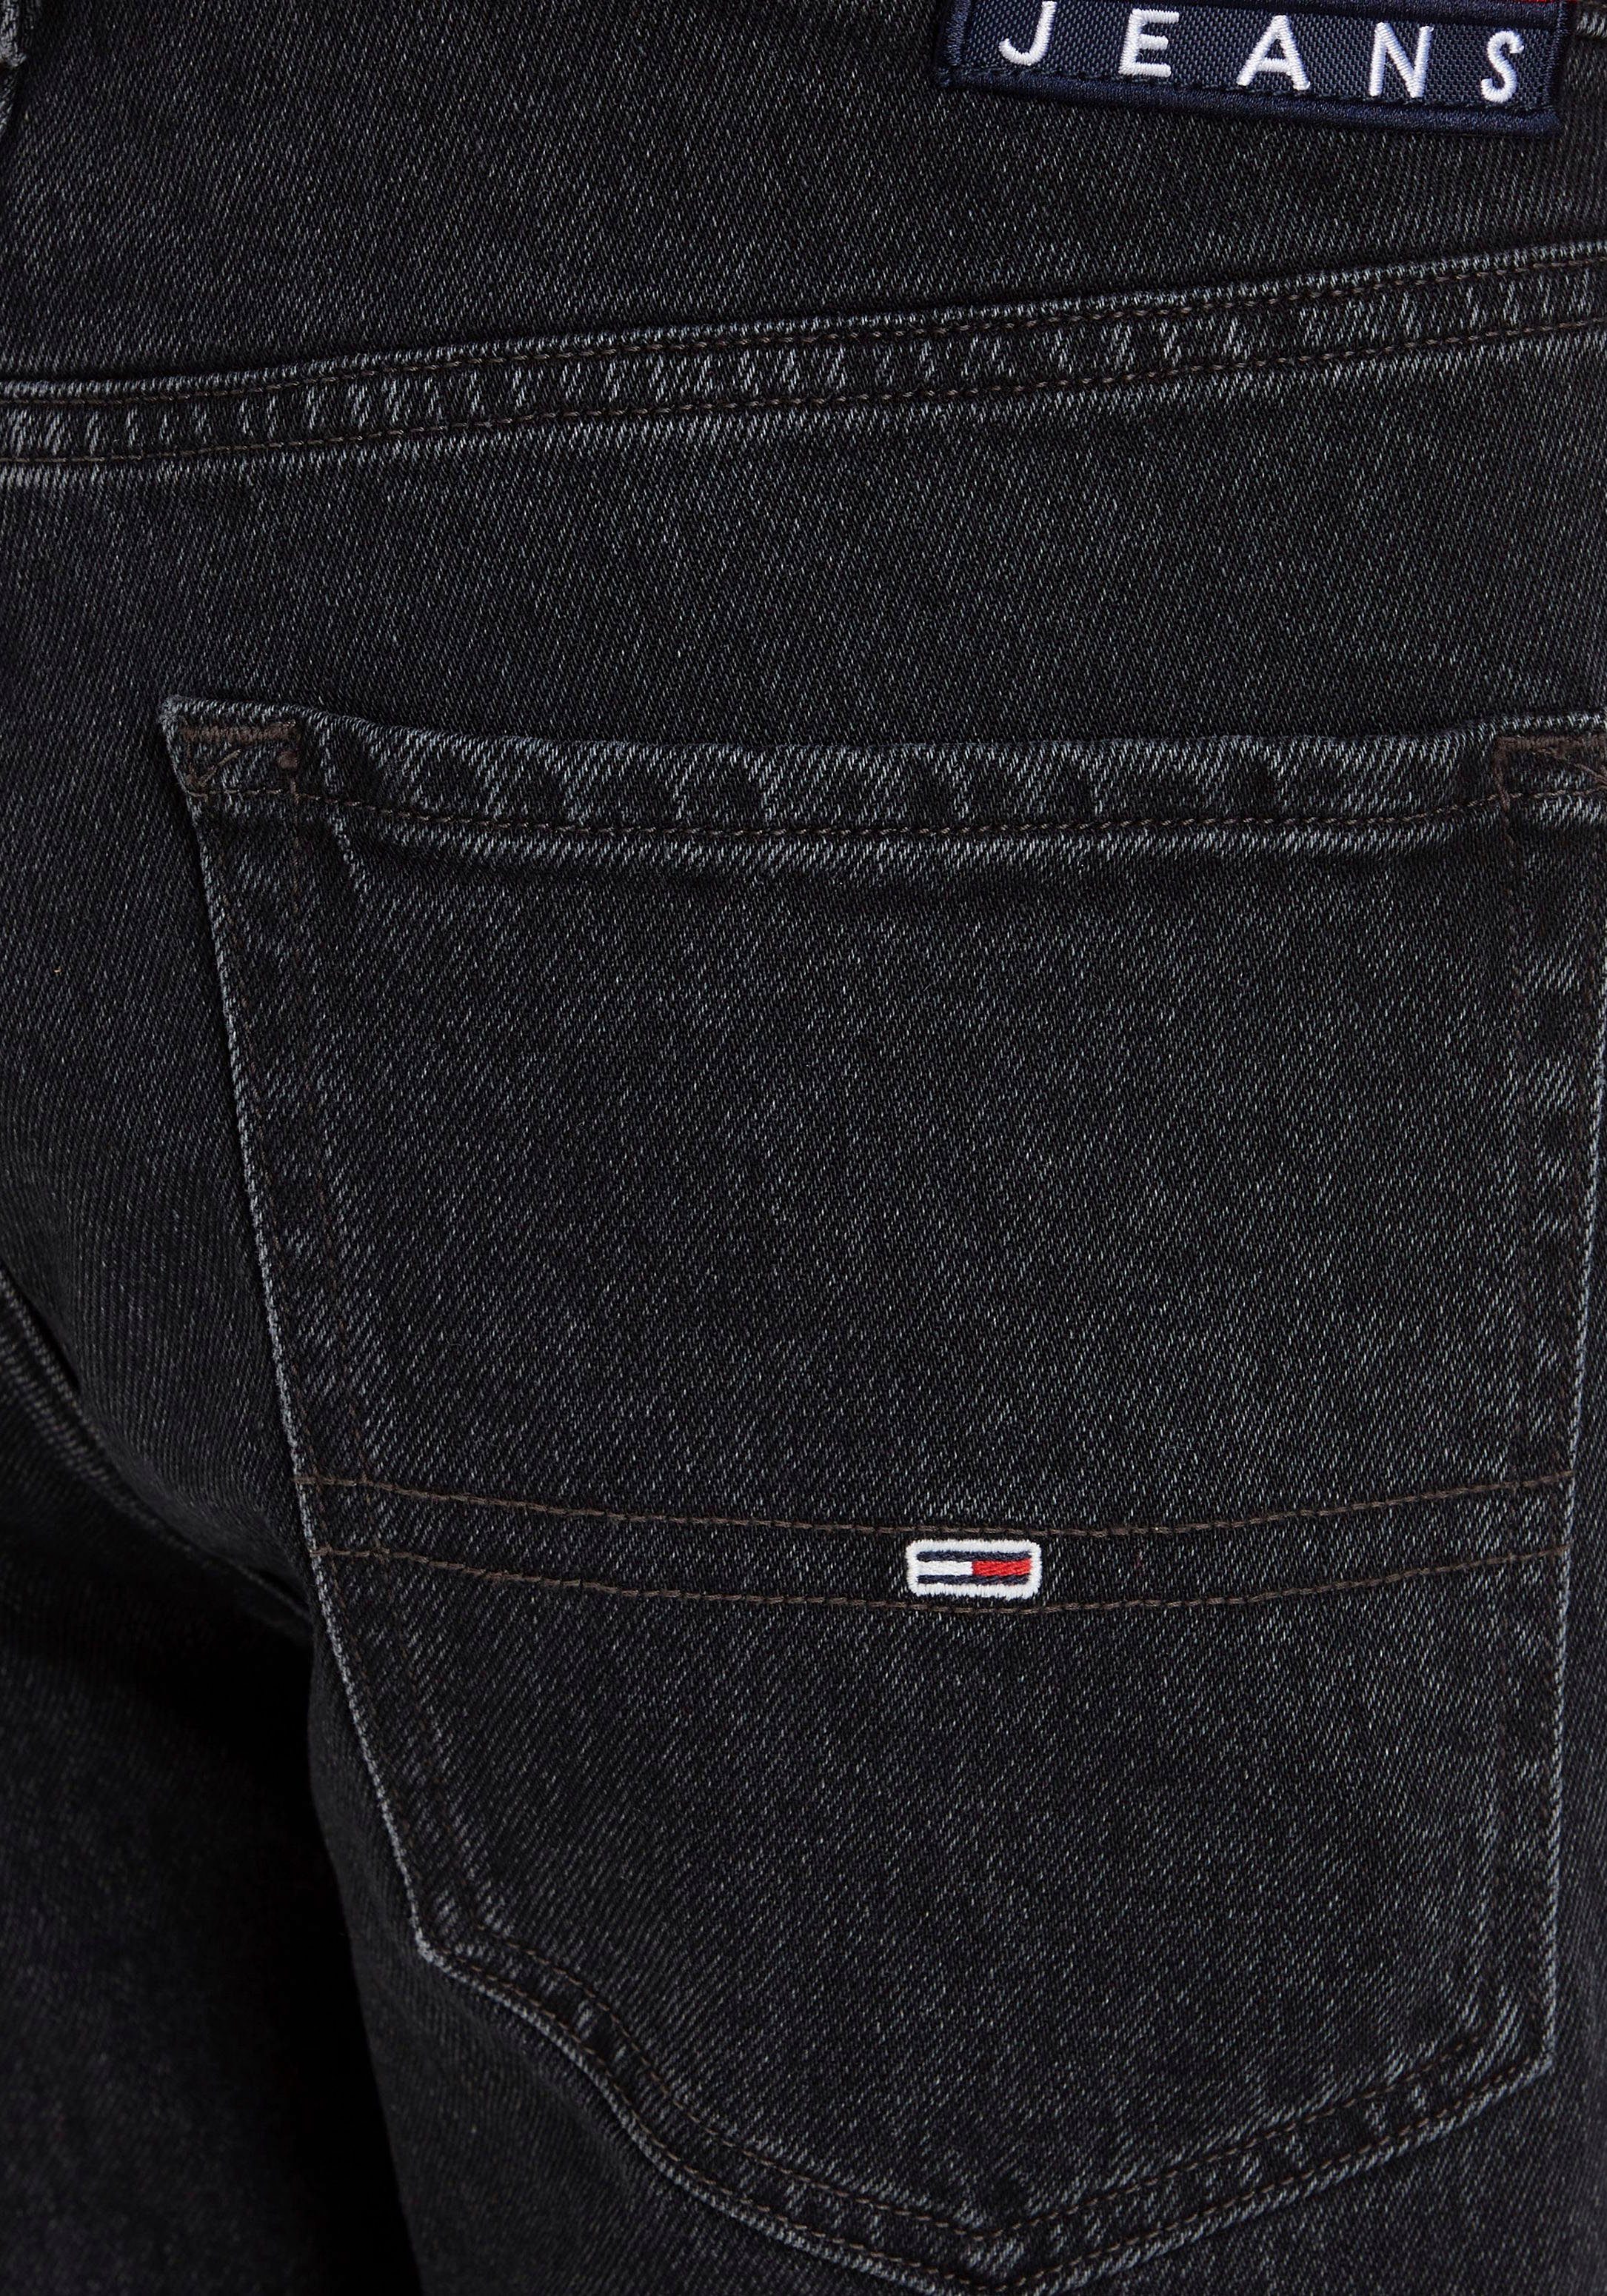 Black Jeans Tommy SLIM 5-Pocket-Jeans SCANTON Denim Y